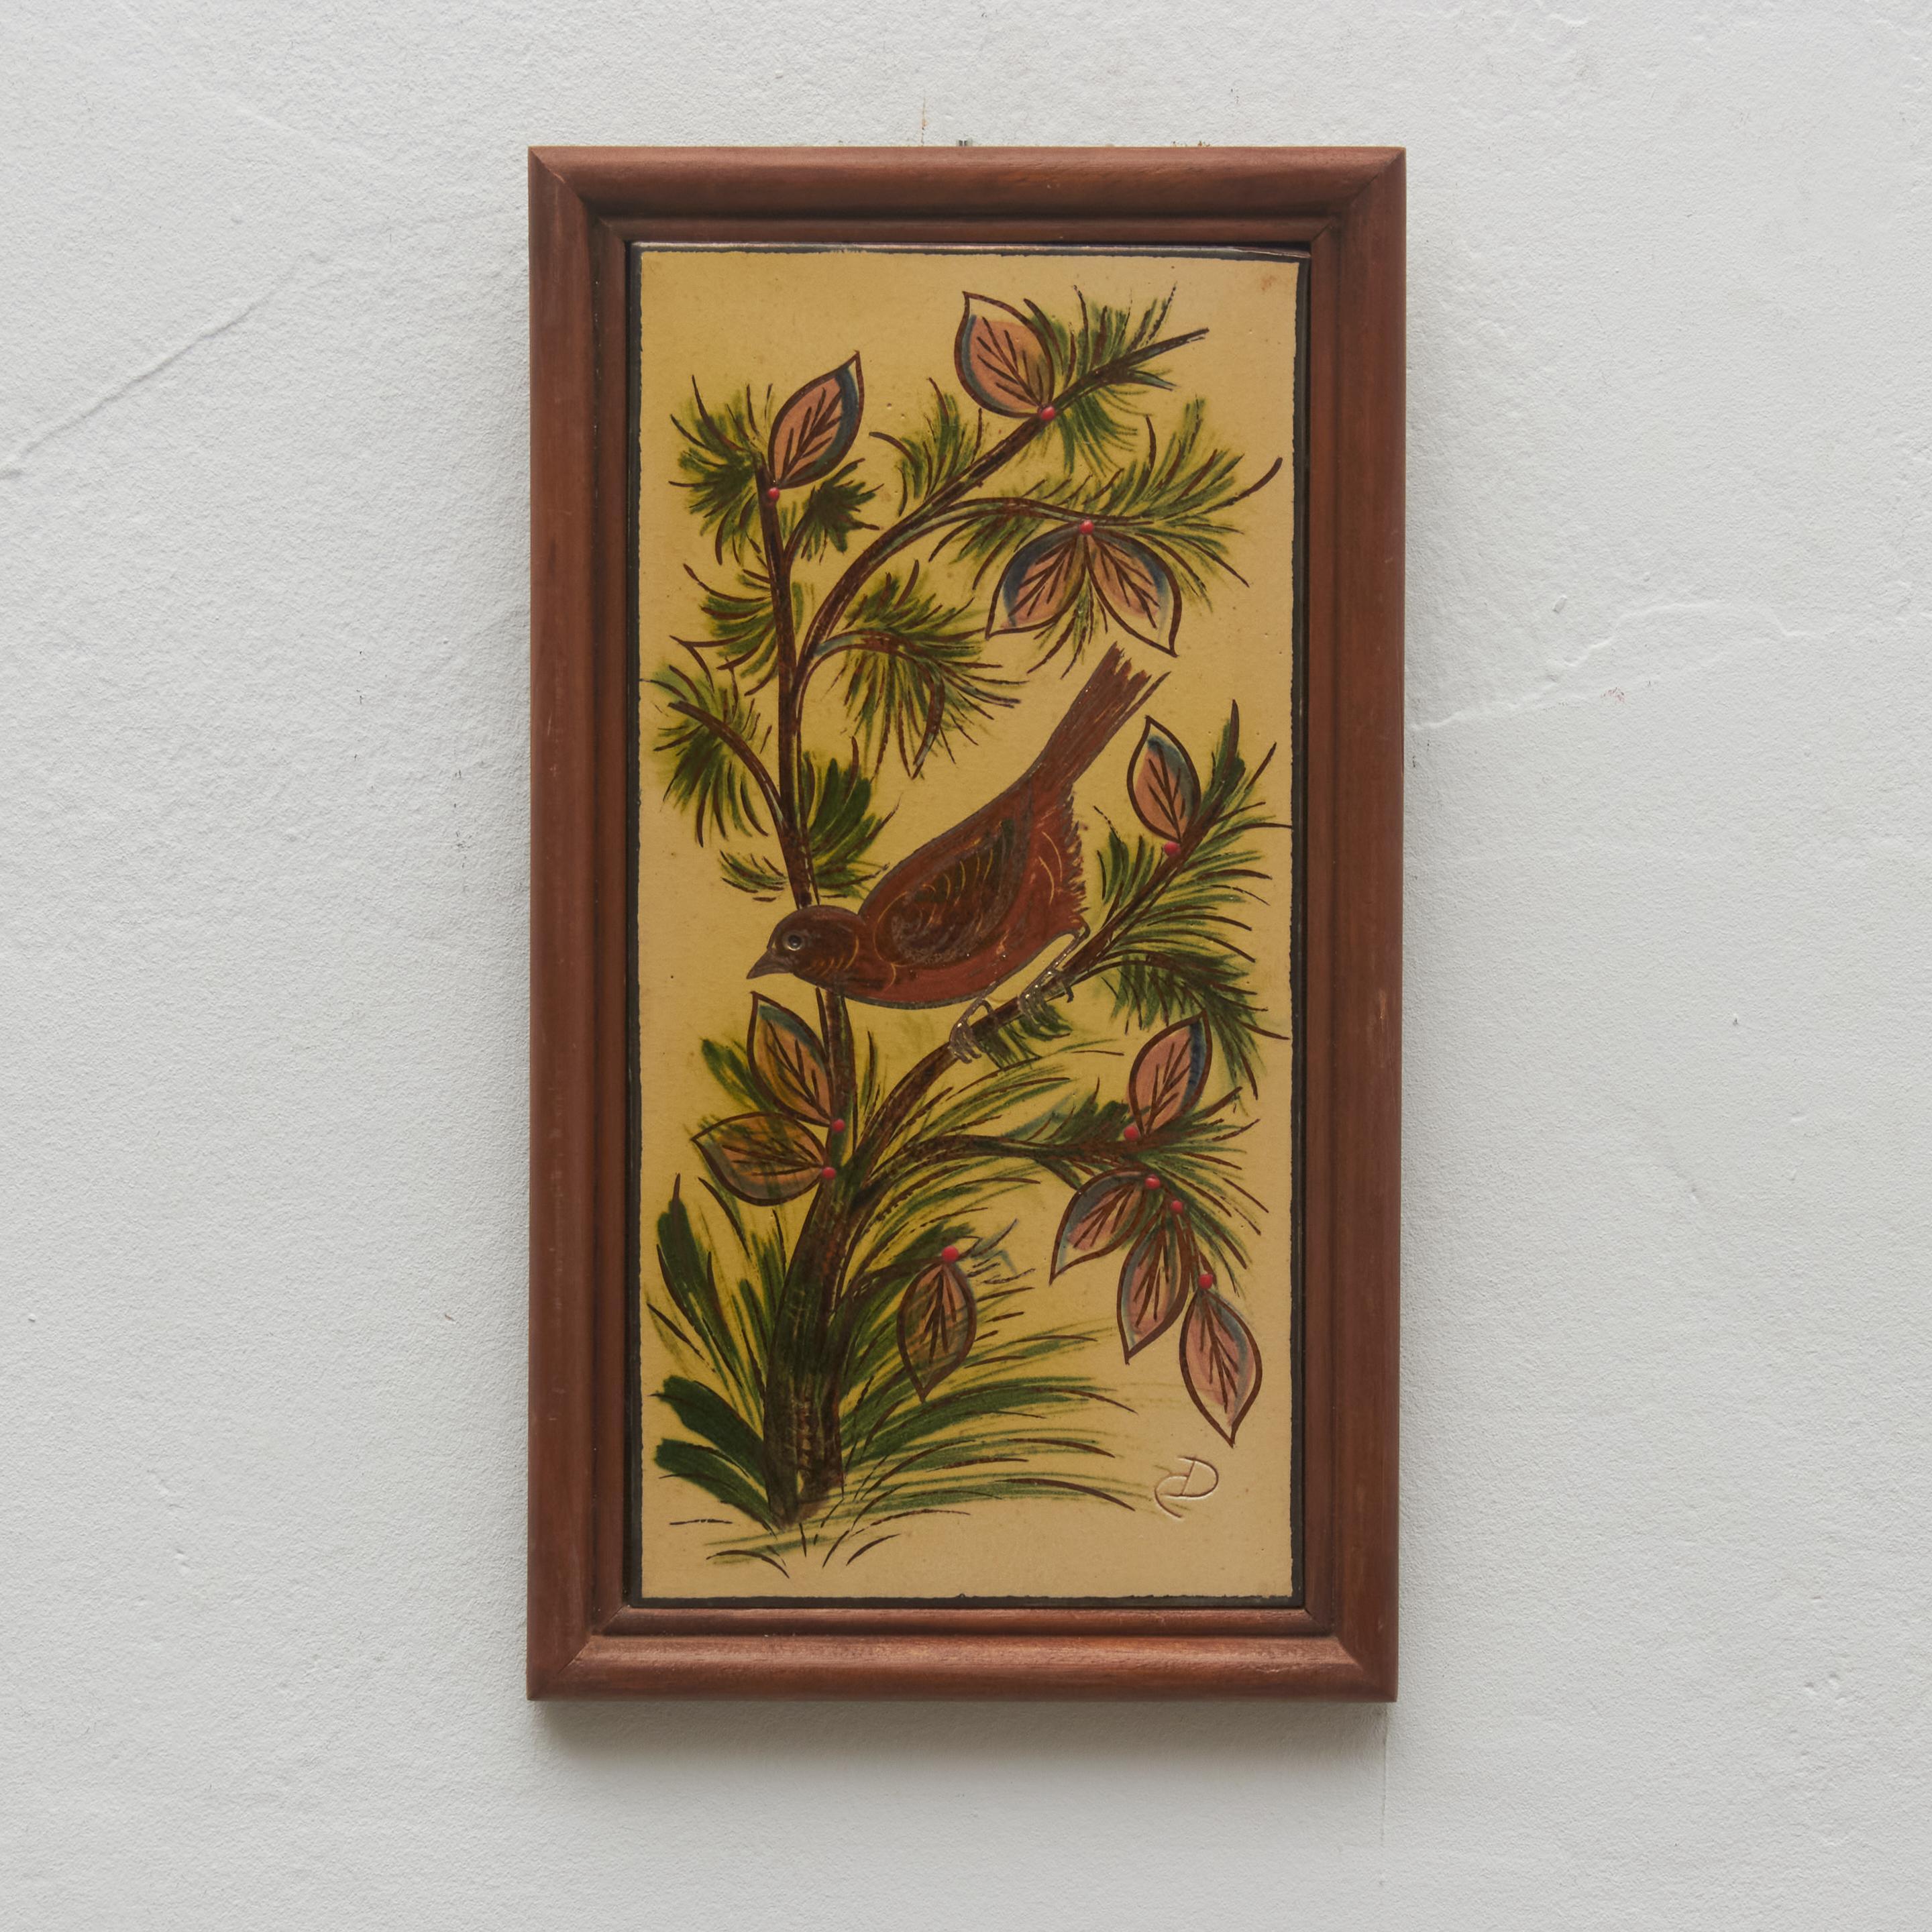 Œuvre d'art en céramique peinte à la main représentant un oiseau, conçue par l'artiste catalan Diaz Costa, vers 1960.
Encadré. Signé.

En état d'origine, avec de légères usures dues à l'âge et à l'utilisation, préservant une belle